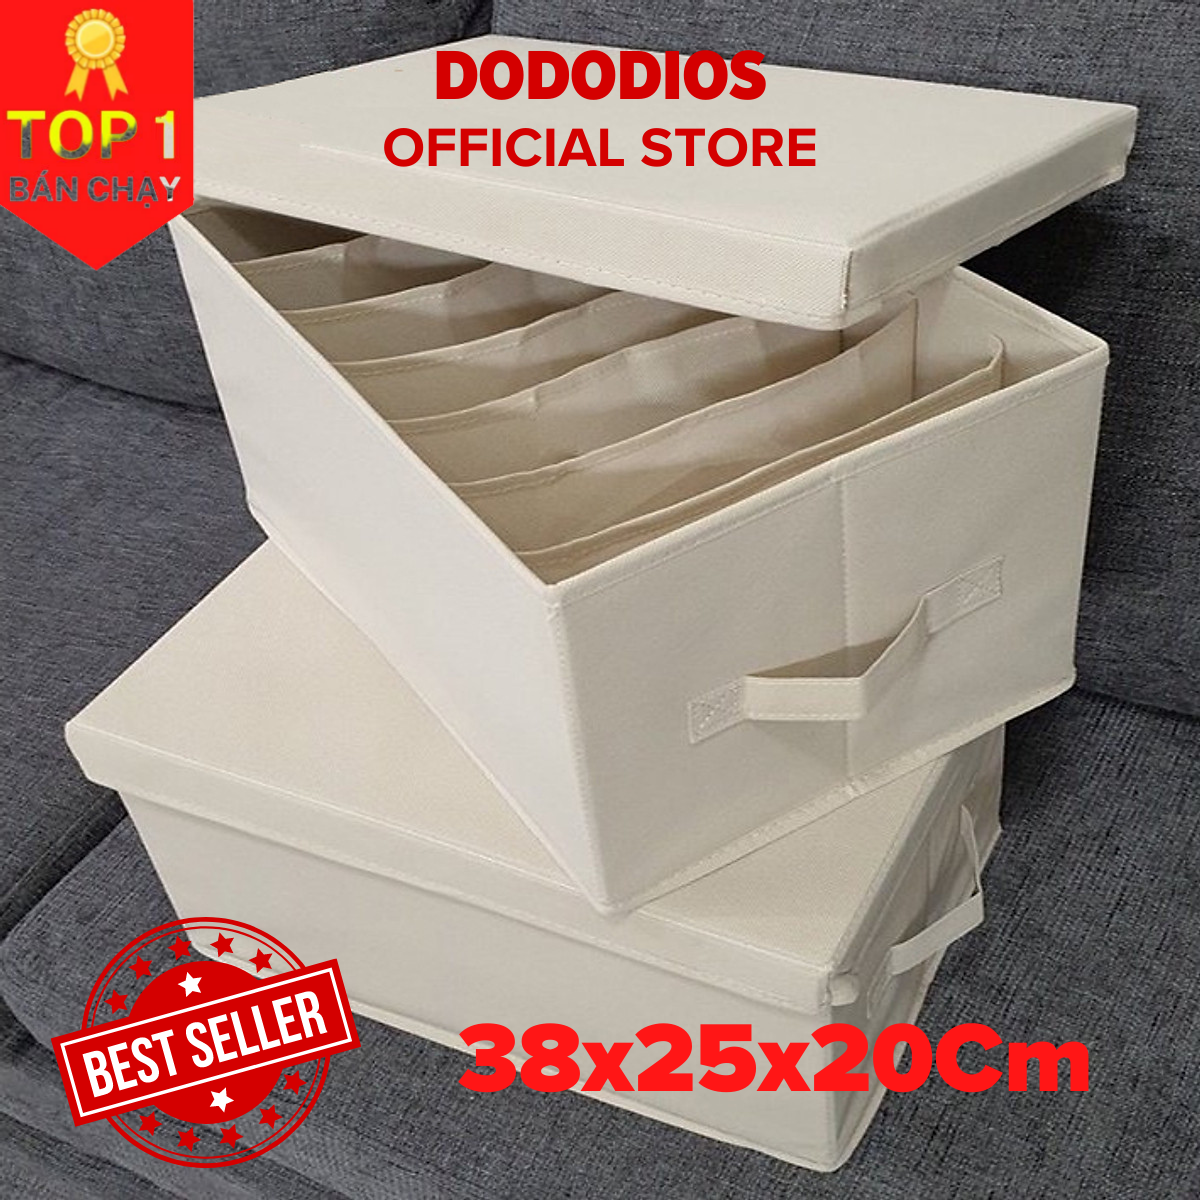 Bộ 2 hộp đựng đồ chia 7 ngăn sắp xếp quần áo dododios - Hộp vải đa năng HQ2 tiện ích, chất liệu cao cấp, phong cách Nhật Bản sang trọng